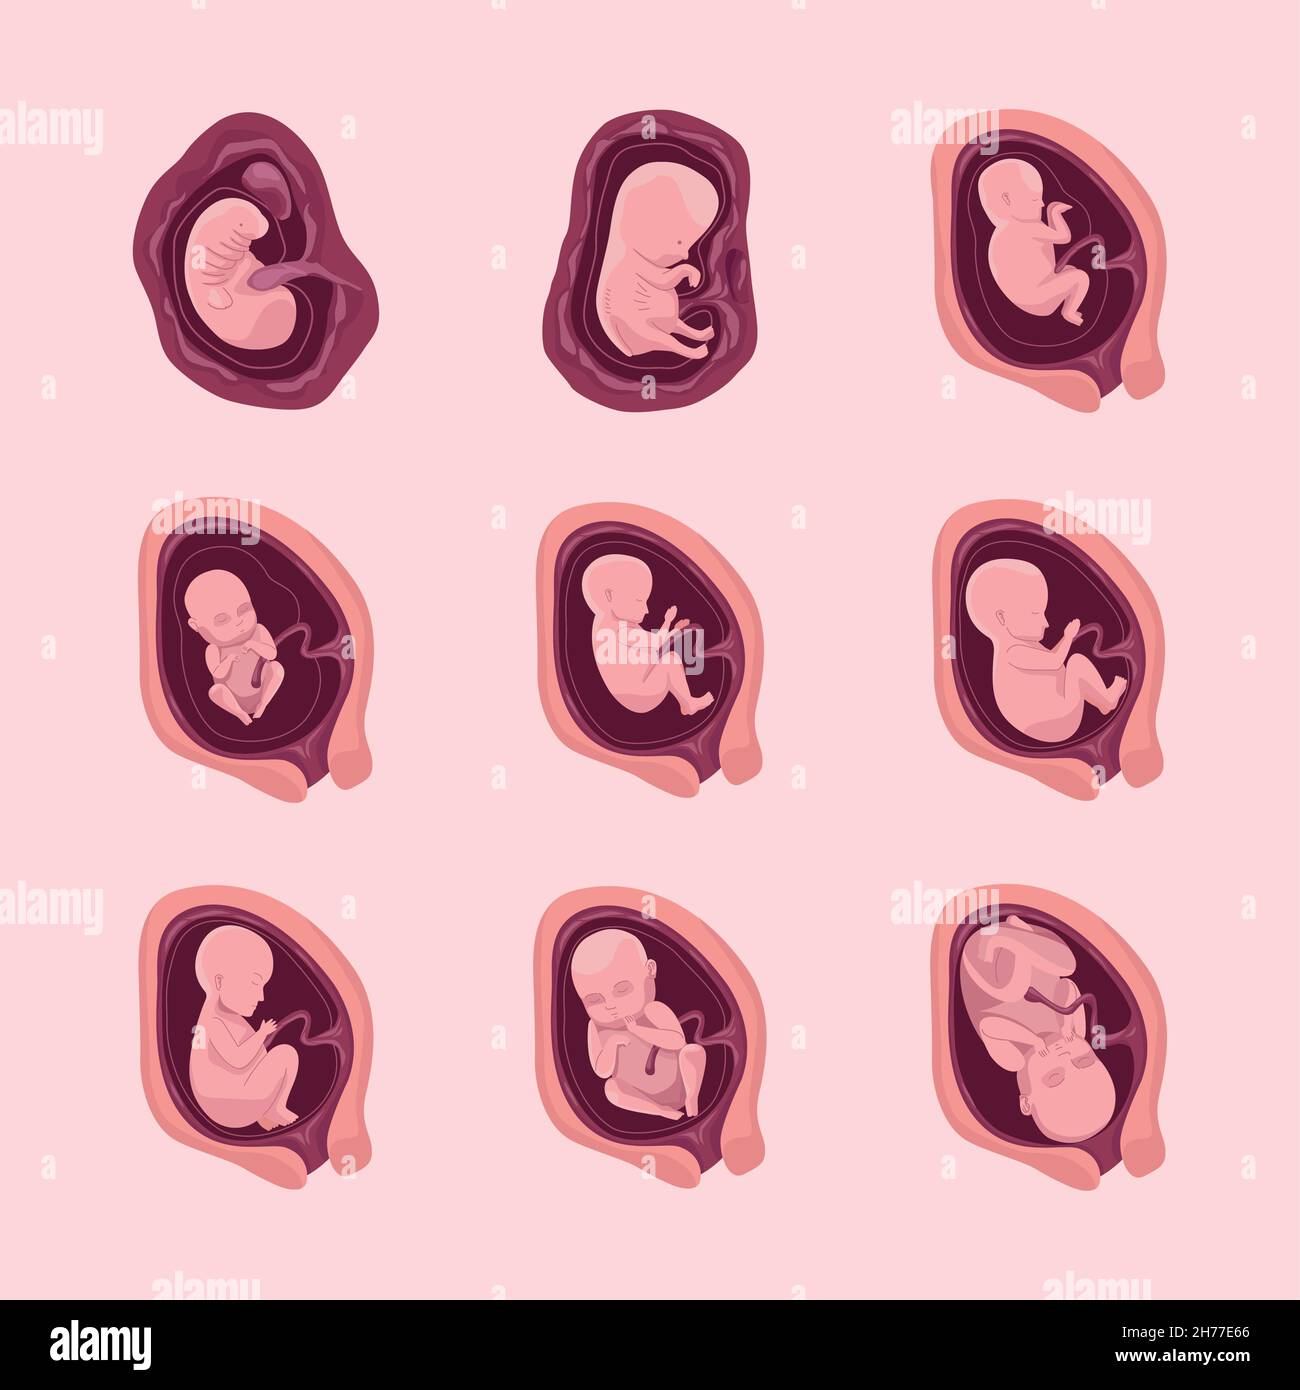 nine embryo development icons Stock Vector